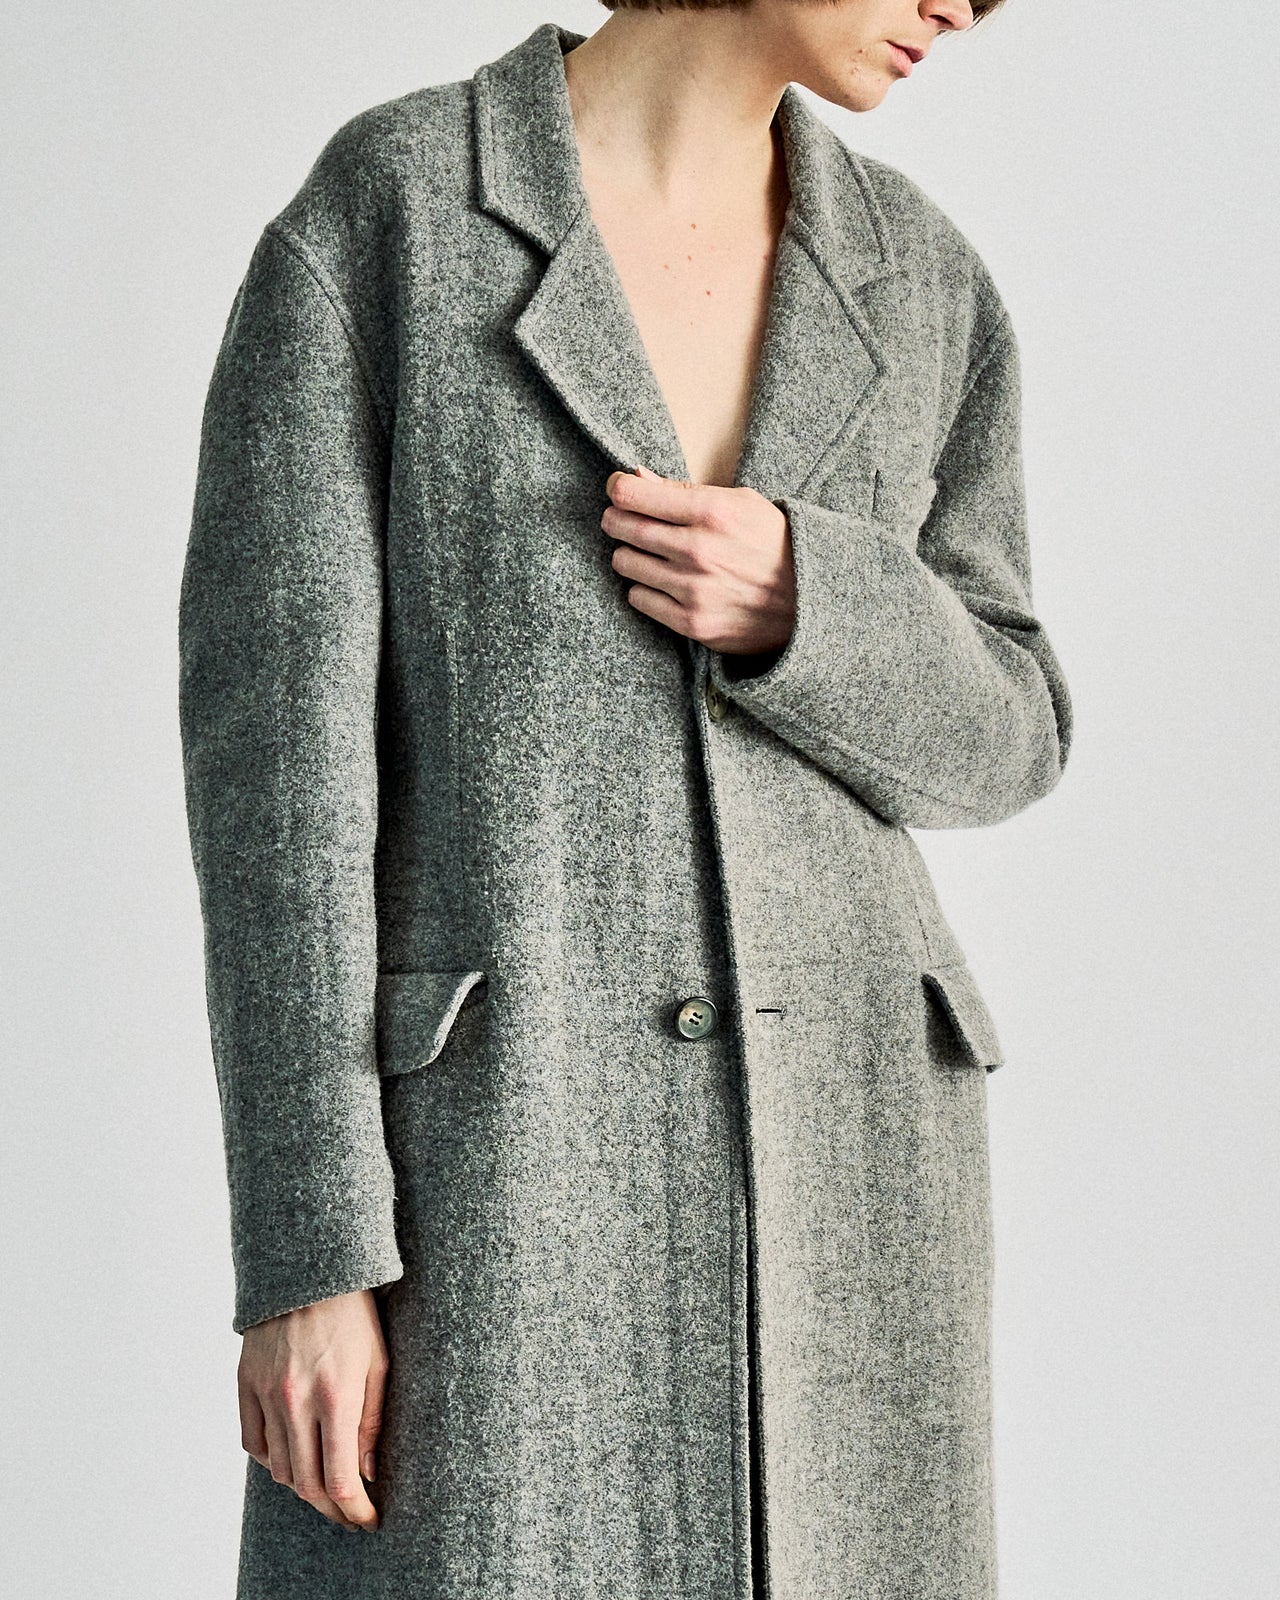 Celine Longline marle wool coat